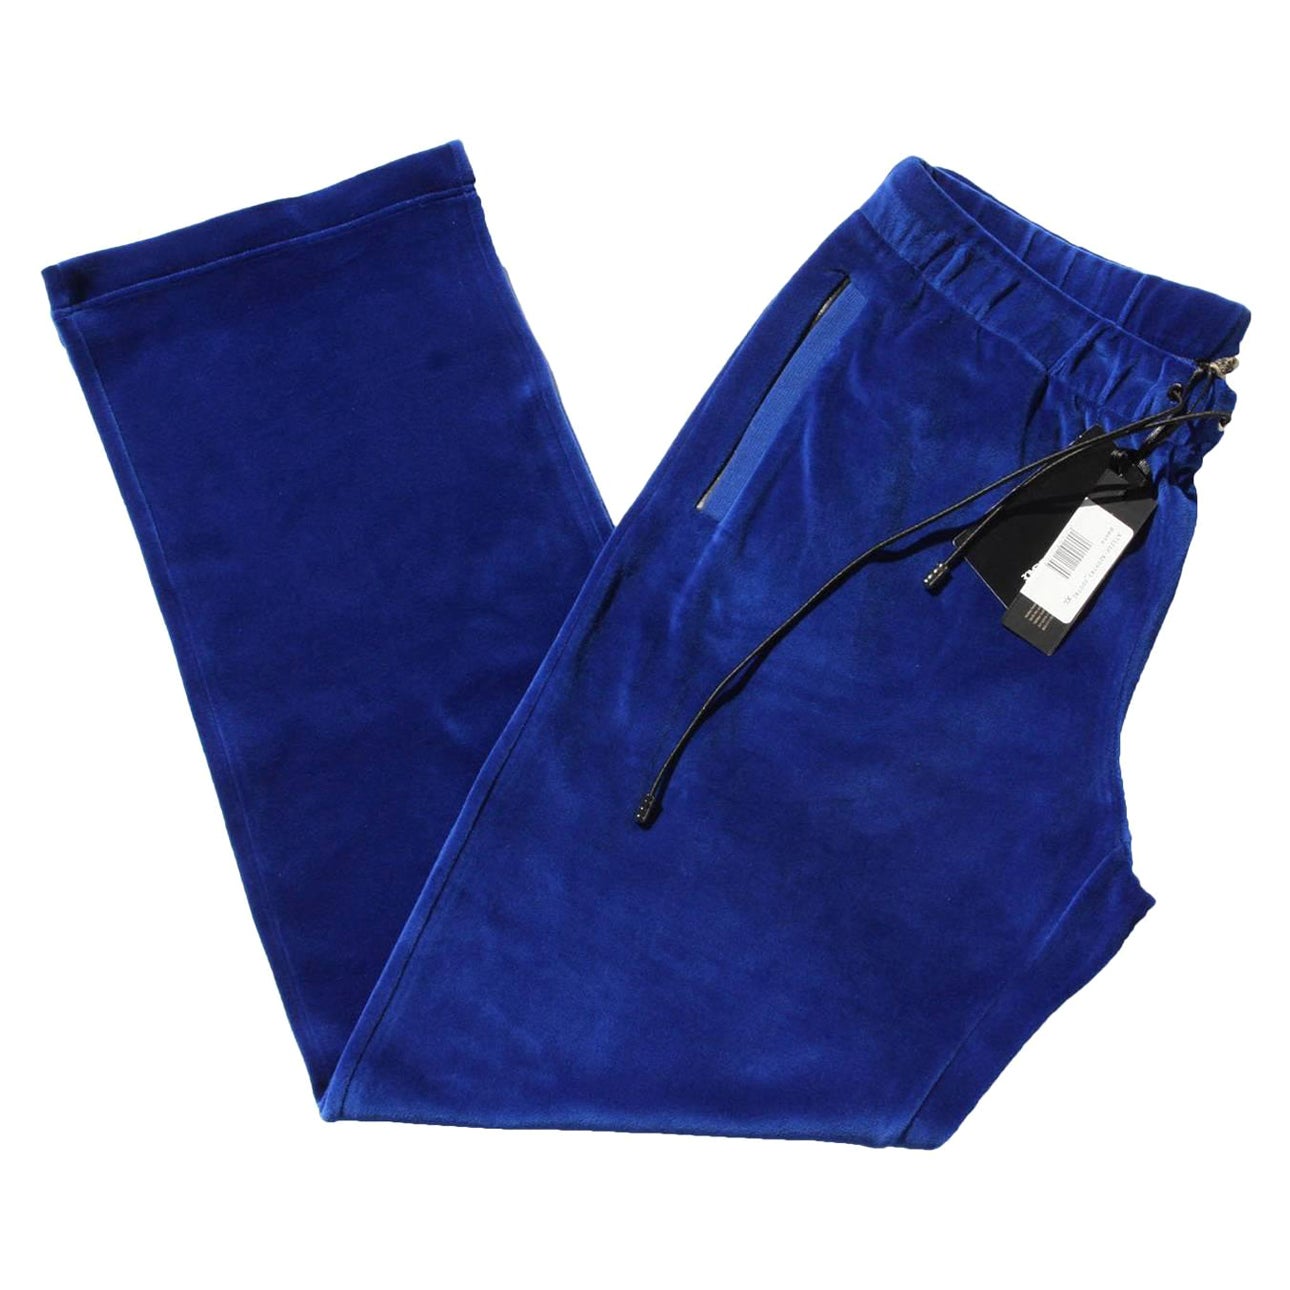 Louis Vuitton SS19 Blue x White x Black Monogram Jogger Pants 29lk53s –  Bagriculture